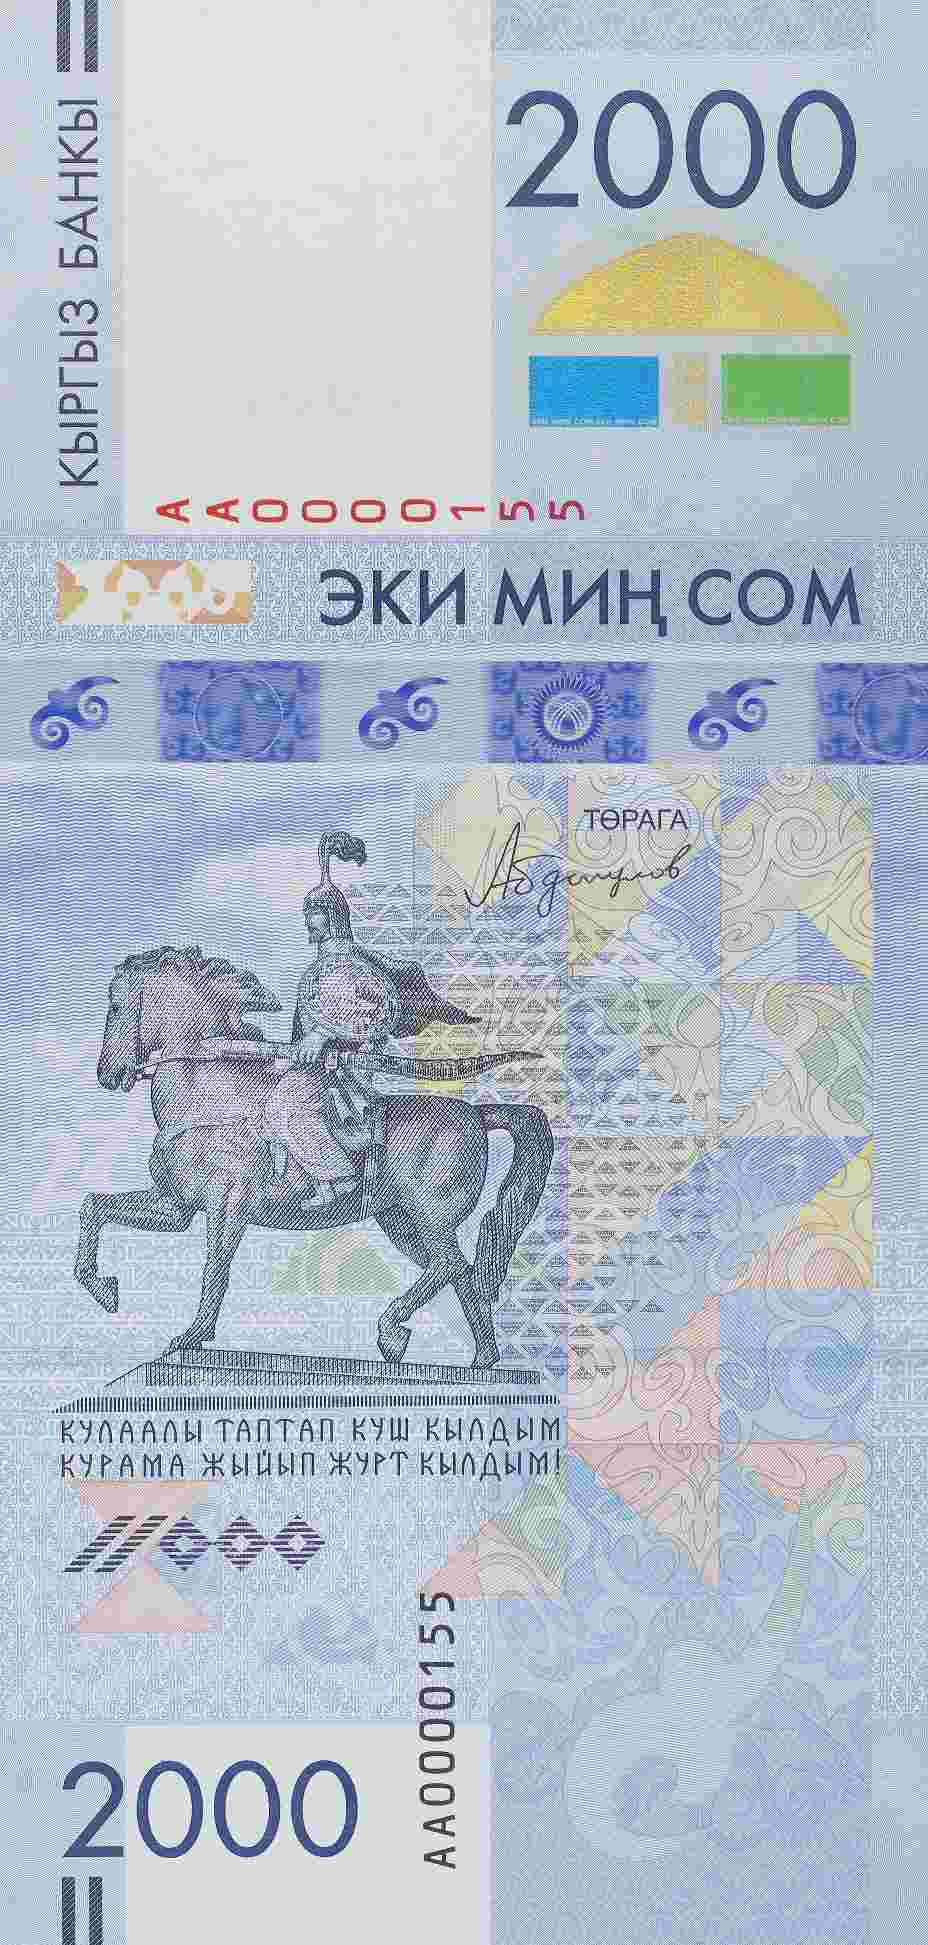 Kirgistan wydaje nowy banknot okolicznościowy o nominale 2000 som